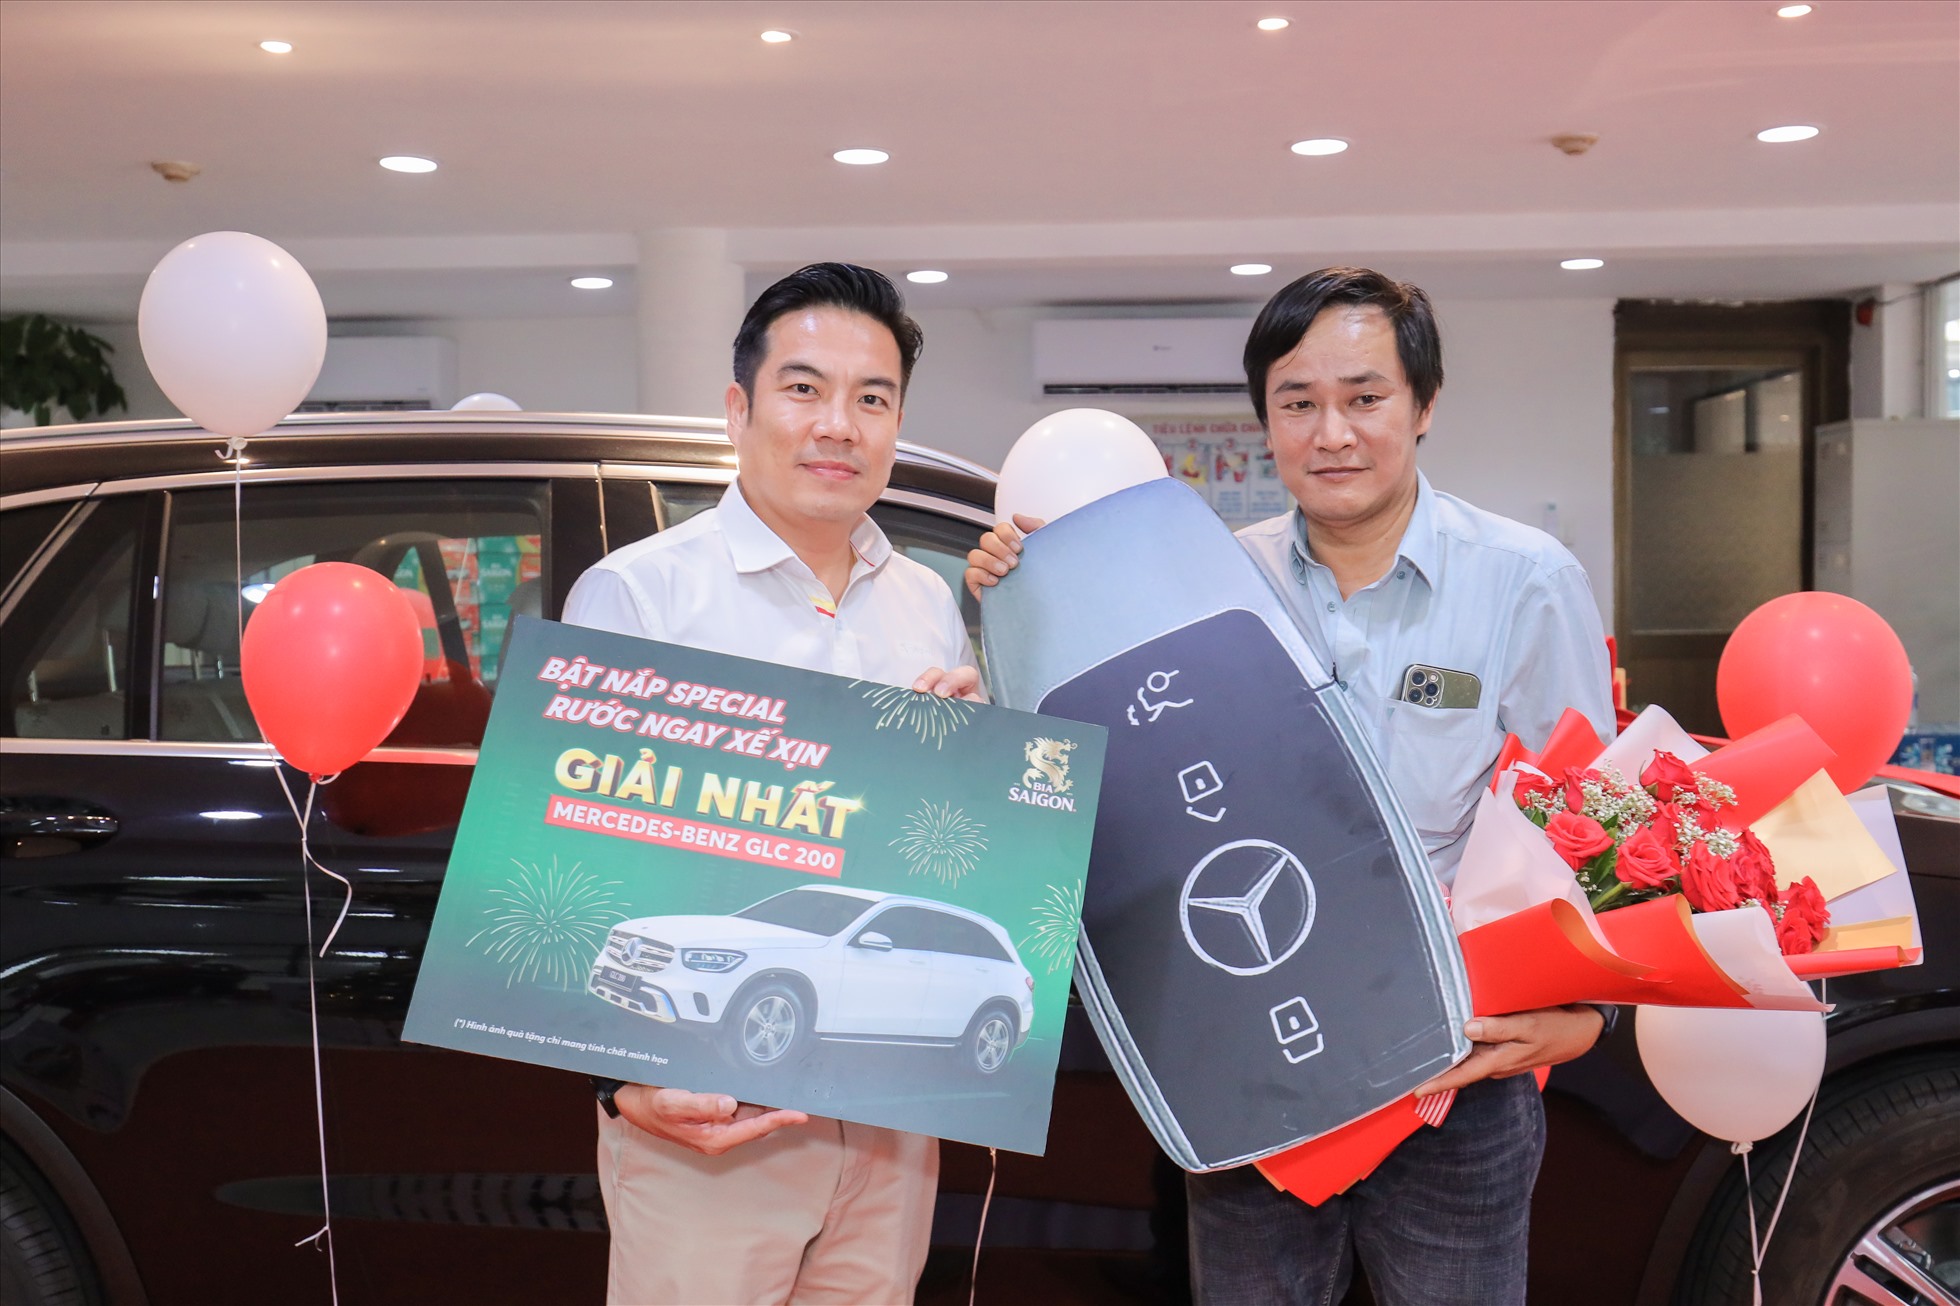 Anh Huỳnh Công Khanh may mắn trở thành khách hàng đầu tiên trúng thưởng xe Mercedes-Benz GLC 200 từ chương trình “Bật nắp Special - Rước ngay xế xịn”. Nguồn: Sabeco